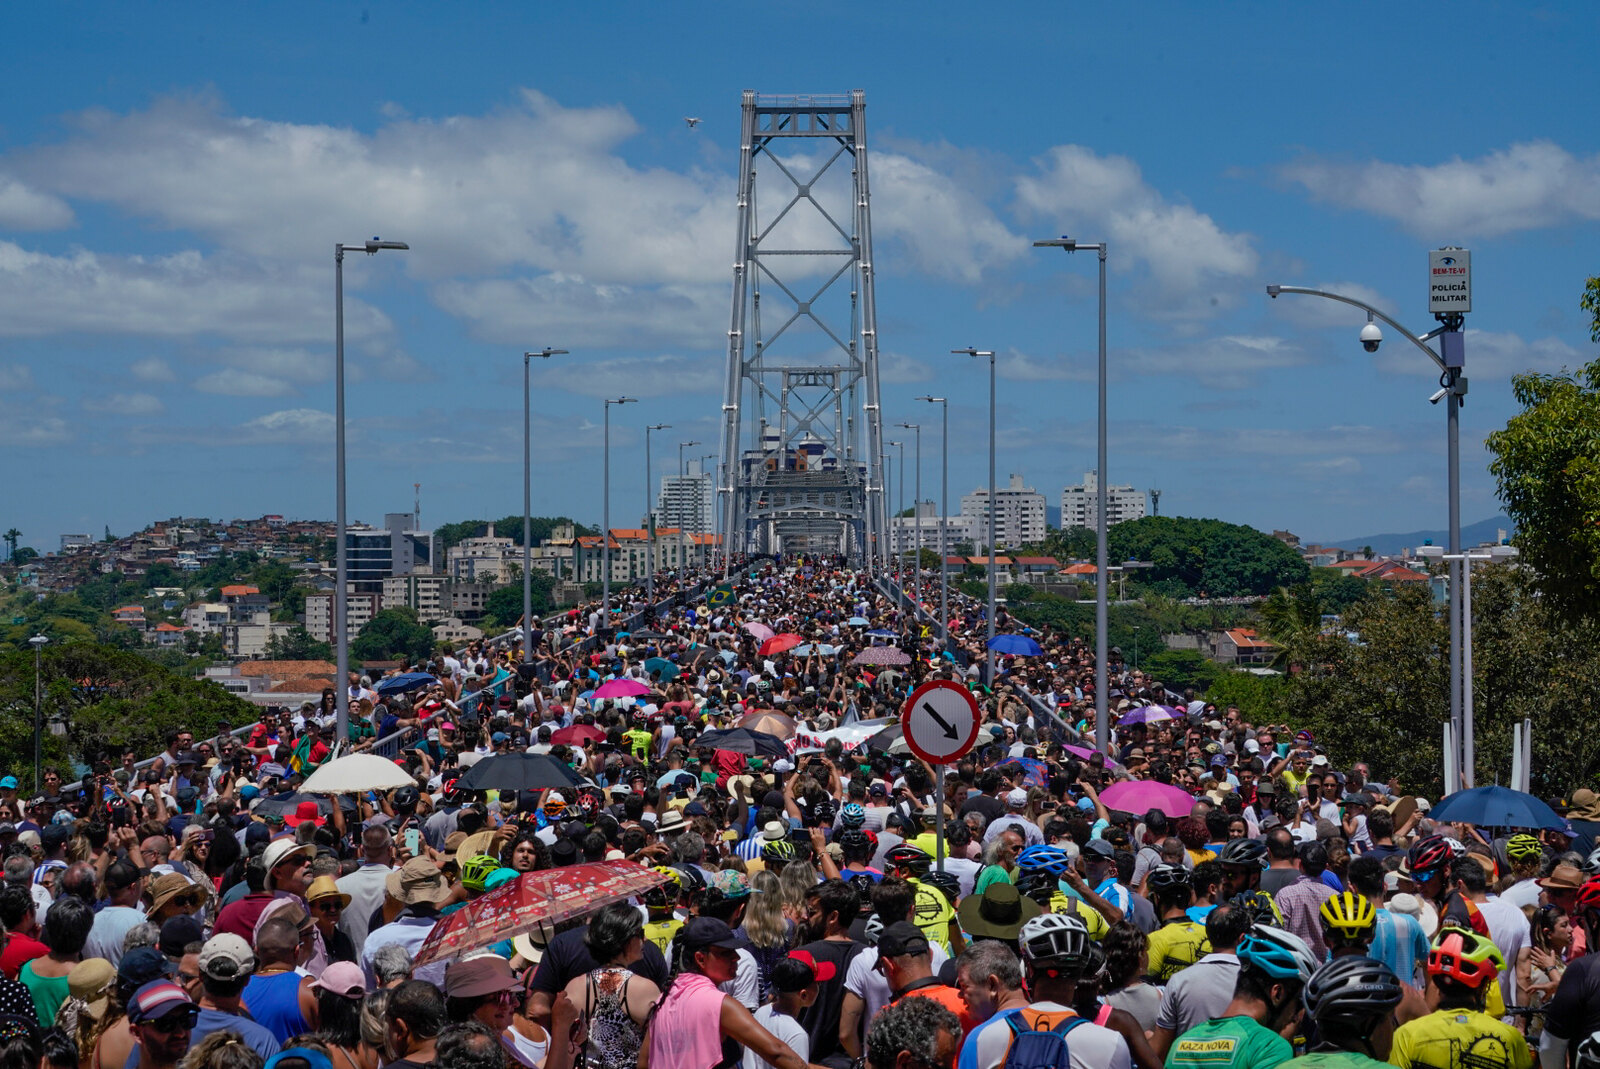 Símbolo de Santa Catarina, Ponte Hercílio Luz completa três anos de reabertura à população